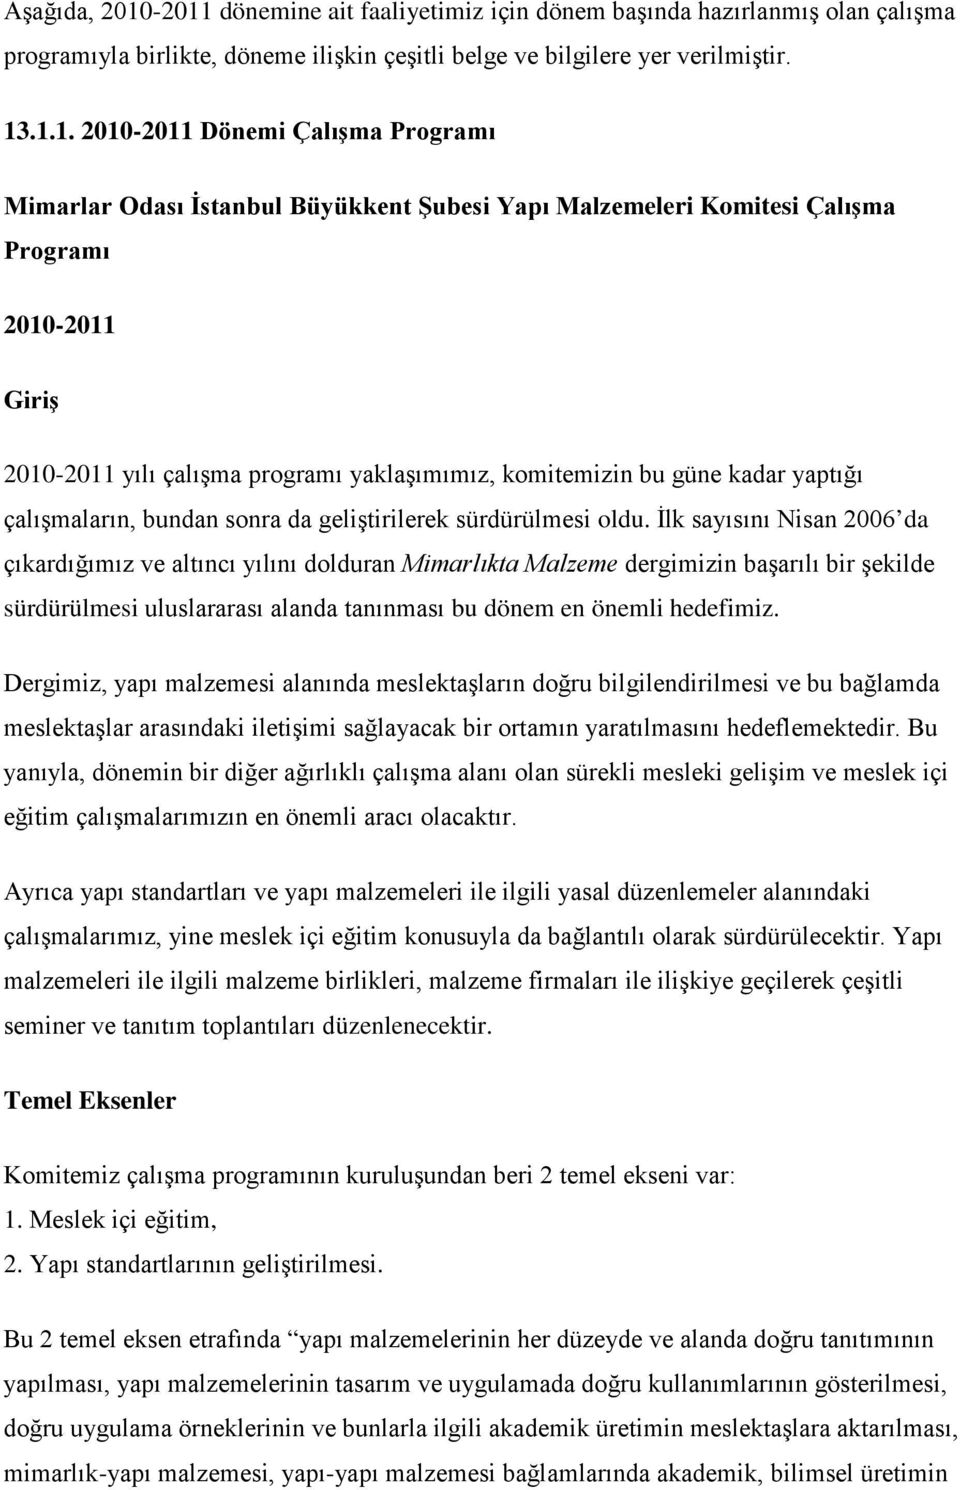 Mimarlar Odası İstanbul Büyükkent Şubesi Yapı Malzemeleri Komitesi Çalışma Programı 2010-2011 Giriş 2010-2011 yılı çalışma programı yaklaşımımız, komitemizin bu güne kadar yaptığı çalışmaların,